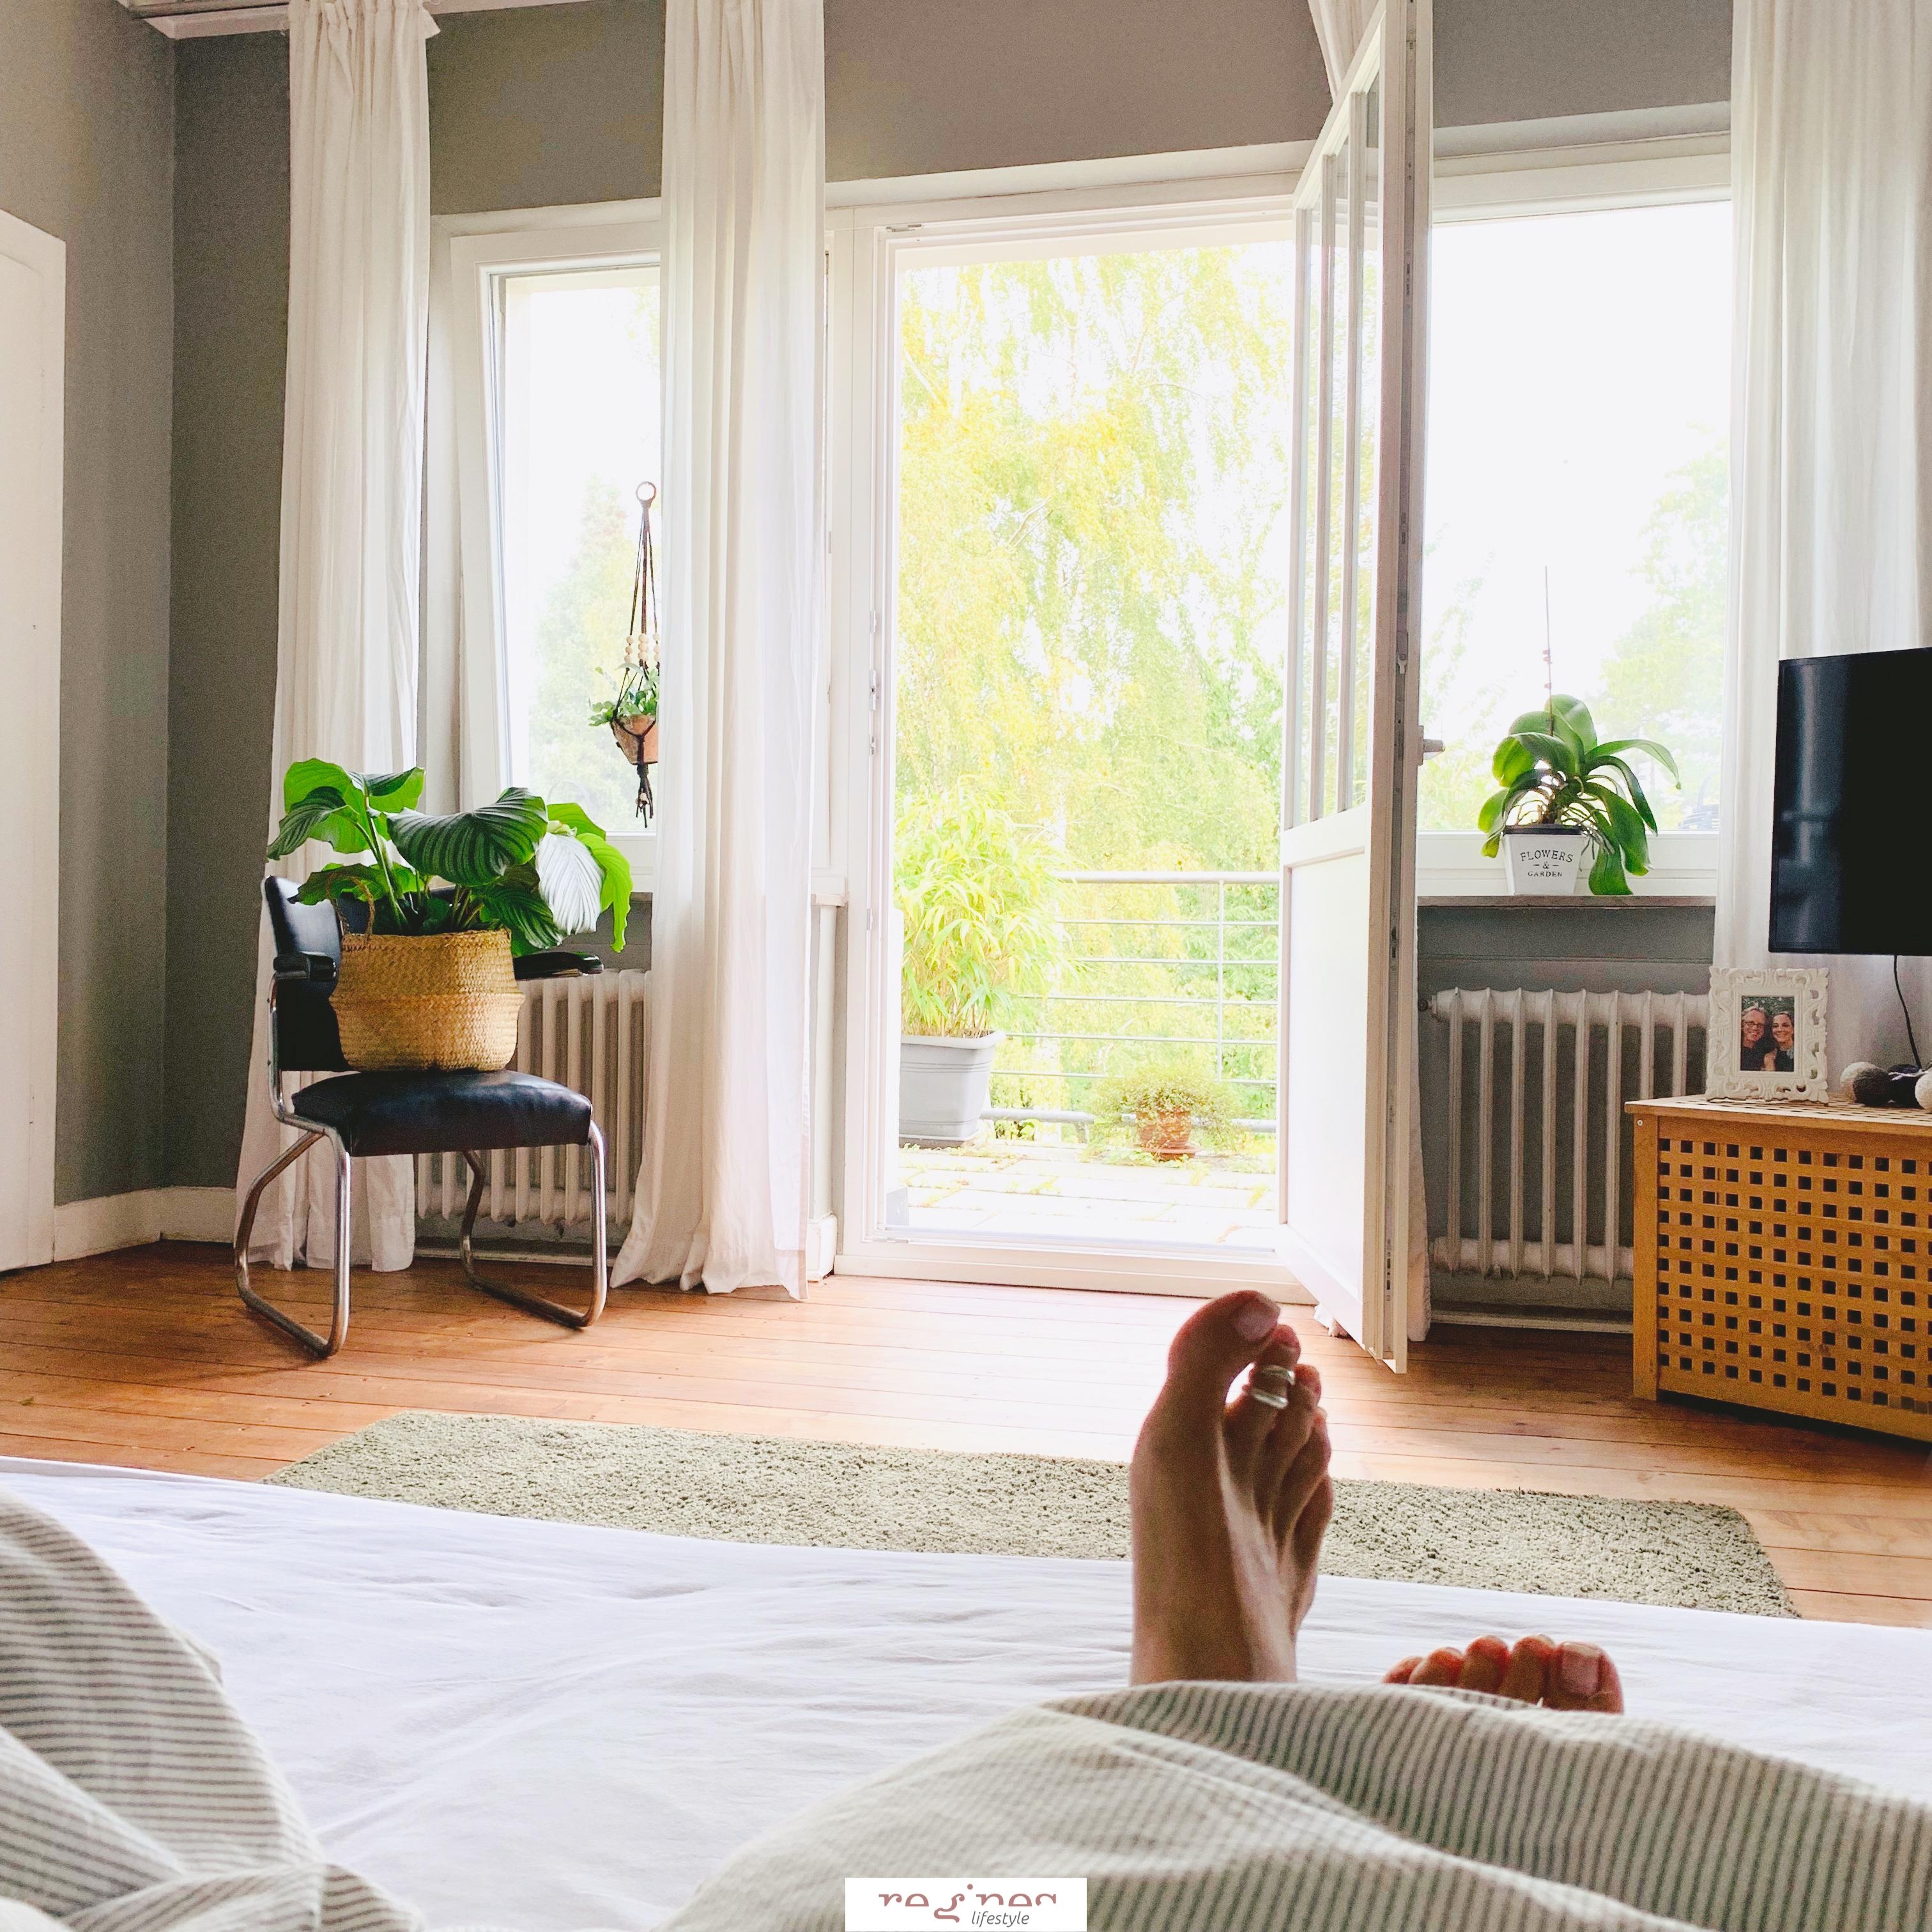 FᖇƐƖƬᗩG ᗪƐᖇ 13., ᗪᗩ ᗷᒪƐƖᗷƬ ᗰᗩᑎ ᗪOᑕh ᗷƐᔕᔕƐᖇ Ɩᗰ ᗷƐƬƬ 🛌

#bedroom #schlafzimmer #grünpflanzen #cozyliving #ausblick 